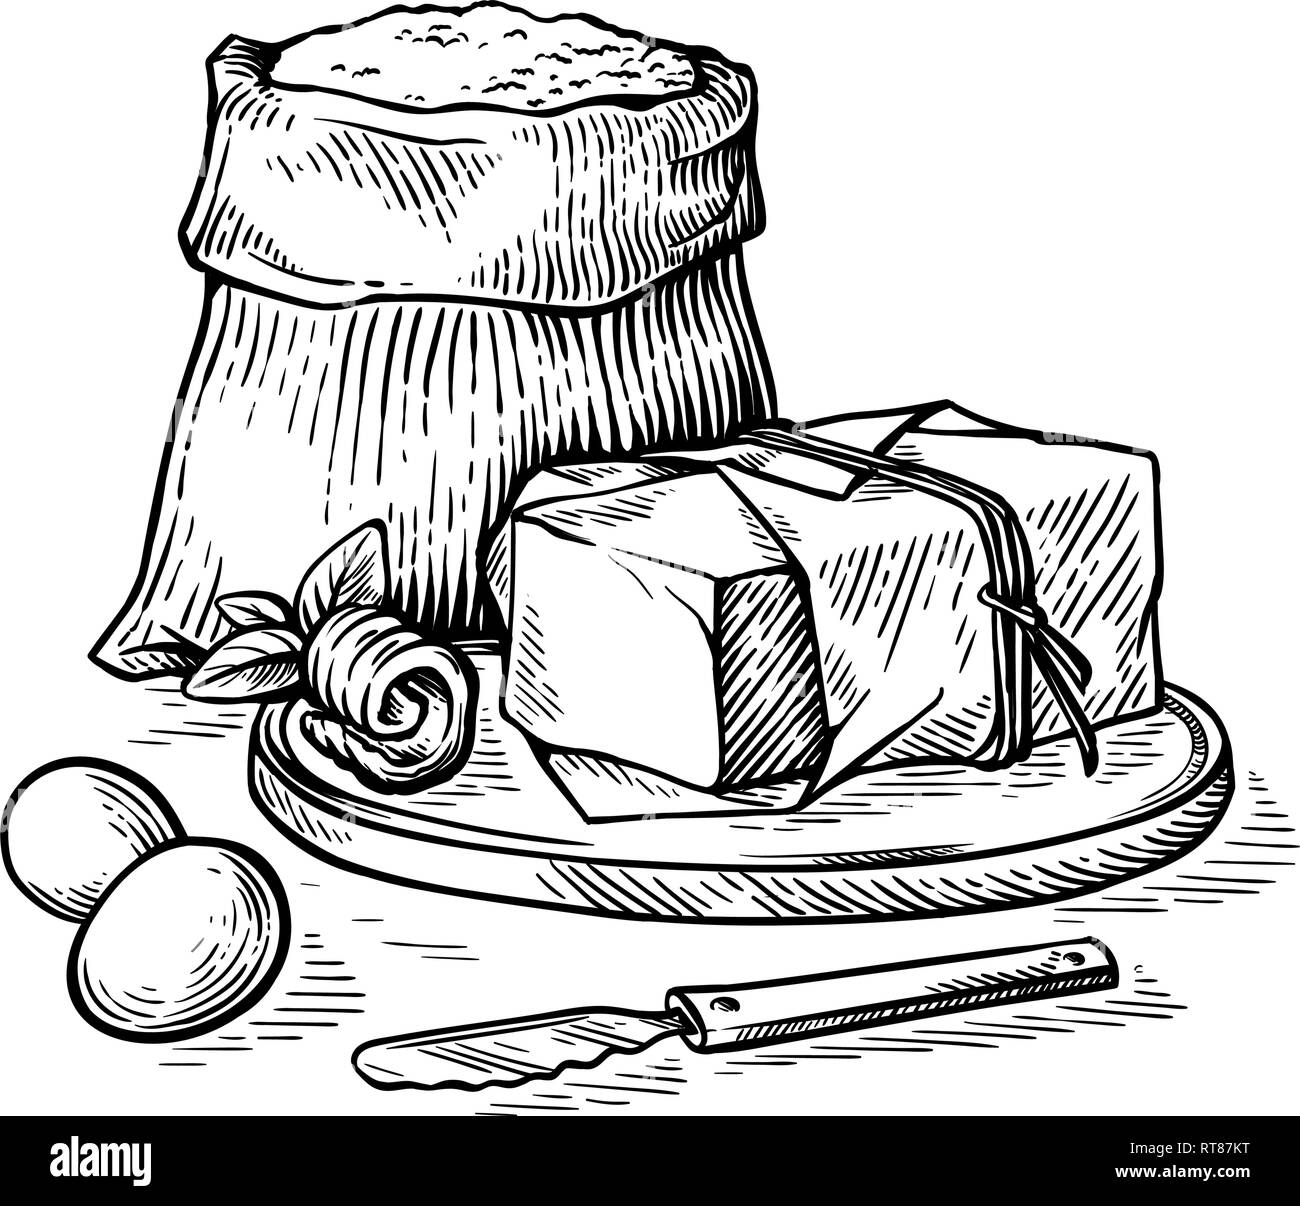 Bozzetto disegnato a mano con sacchi di farina e uova e il burro sulla tavola di legno illustrazione vettoriale Illustrazione Vettoriale